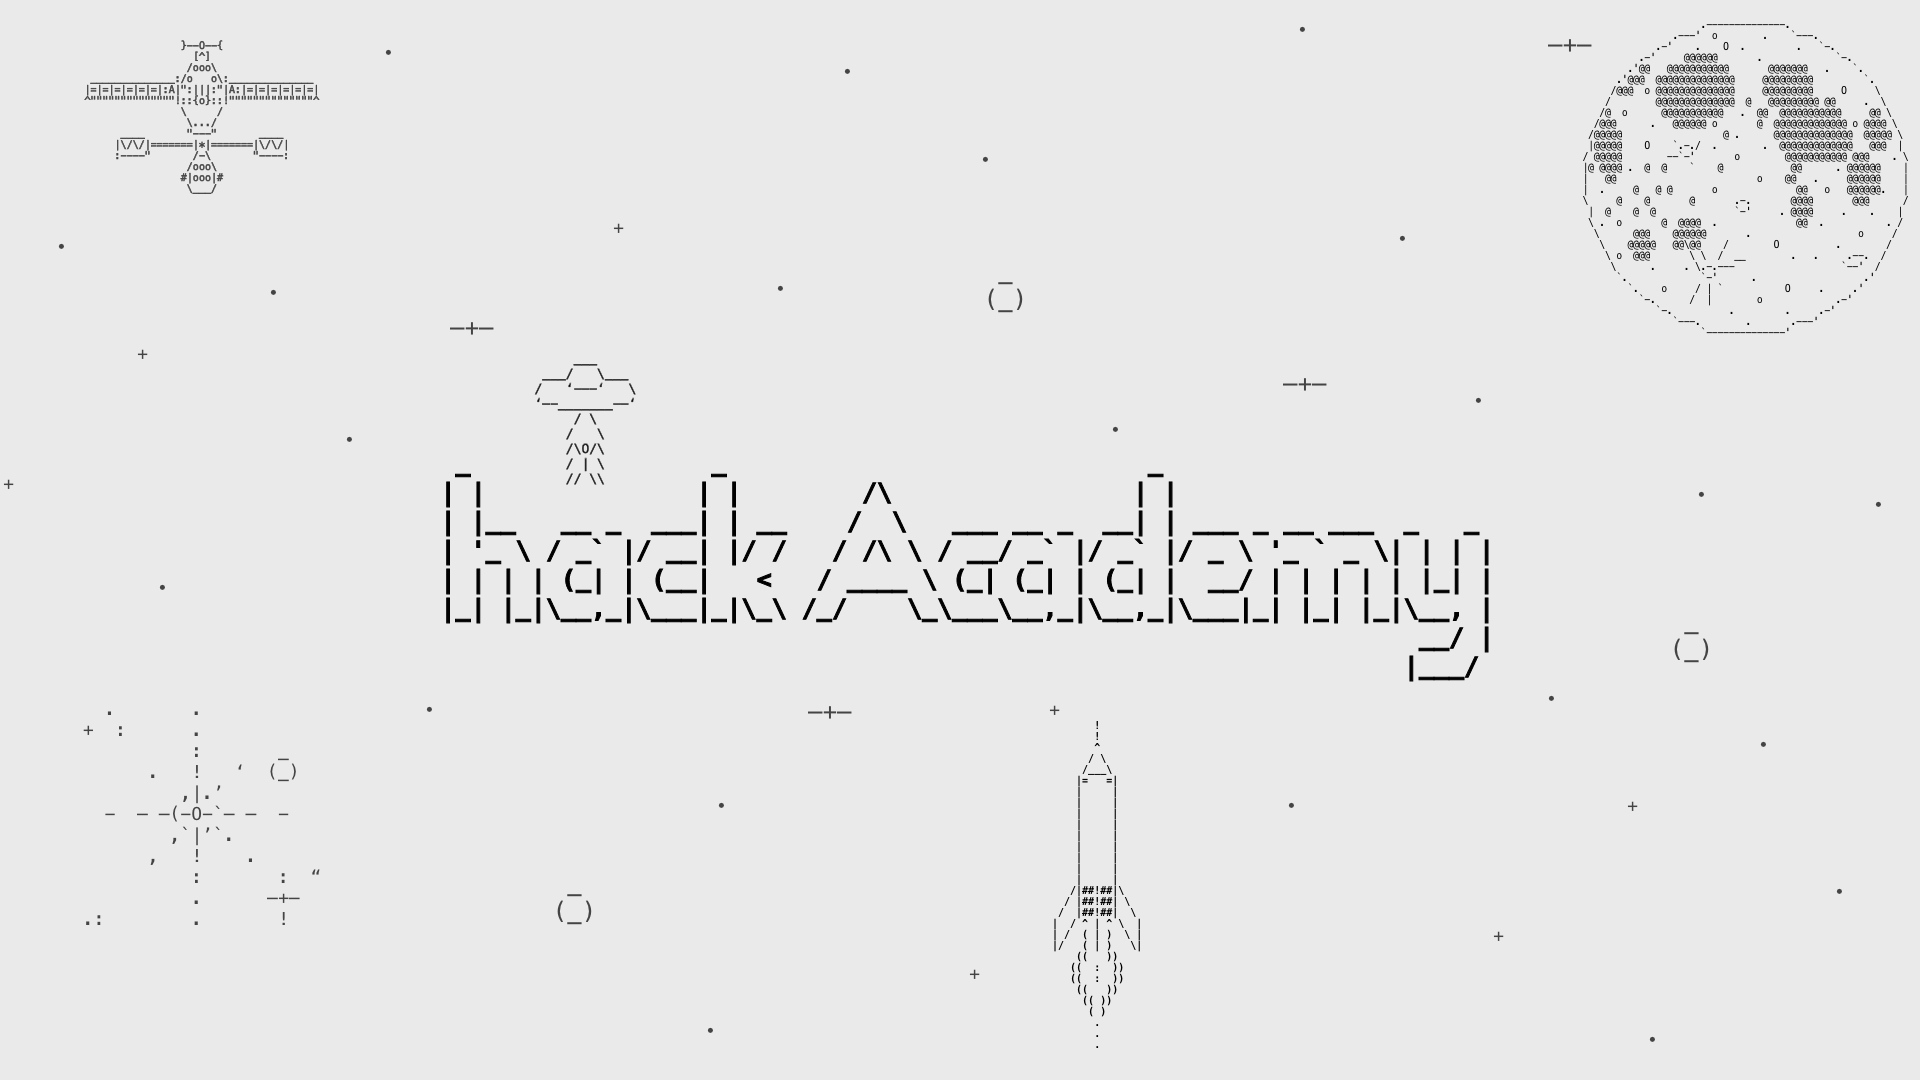 Introducing hack Academy 1